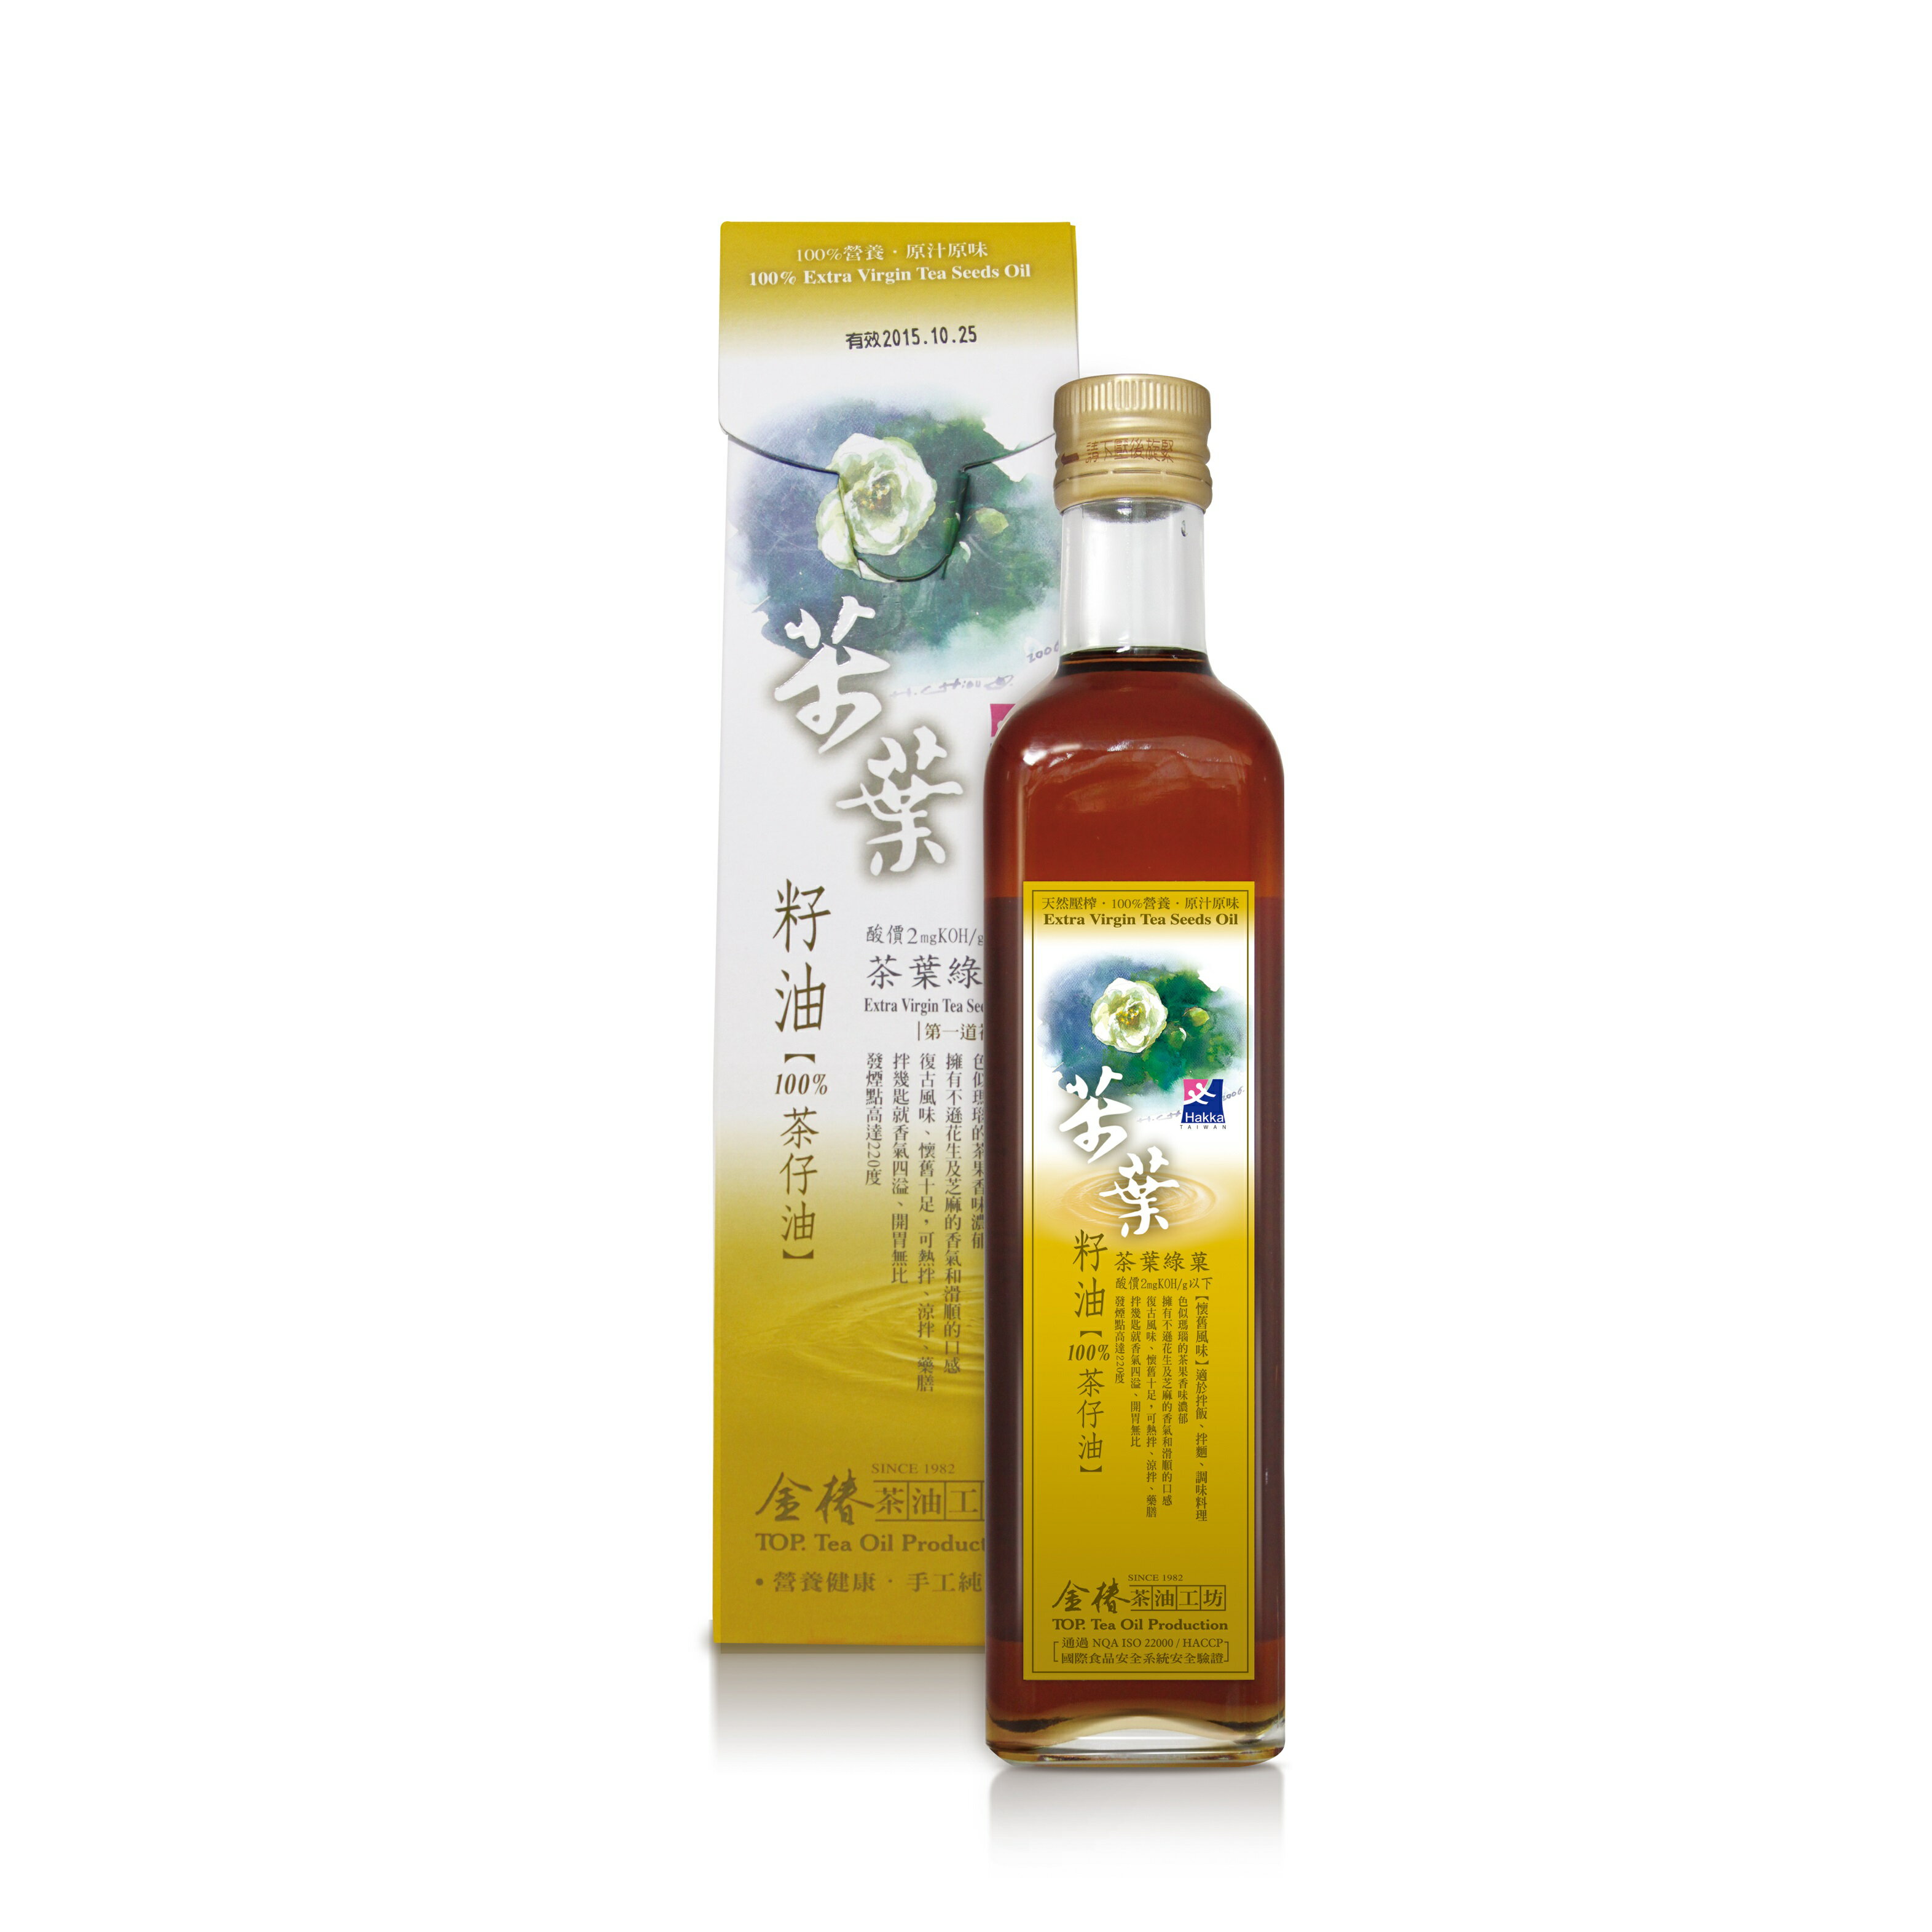 《小瓢蟲生機坊》金椿茶油工坊 - 茶葉綠菓500ml/罐 油品 烹飪油